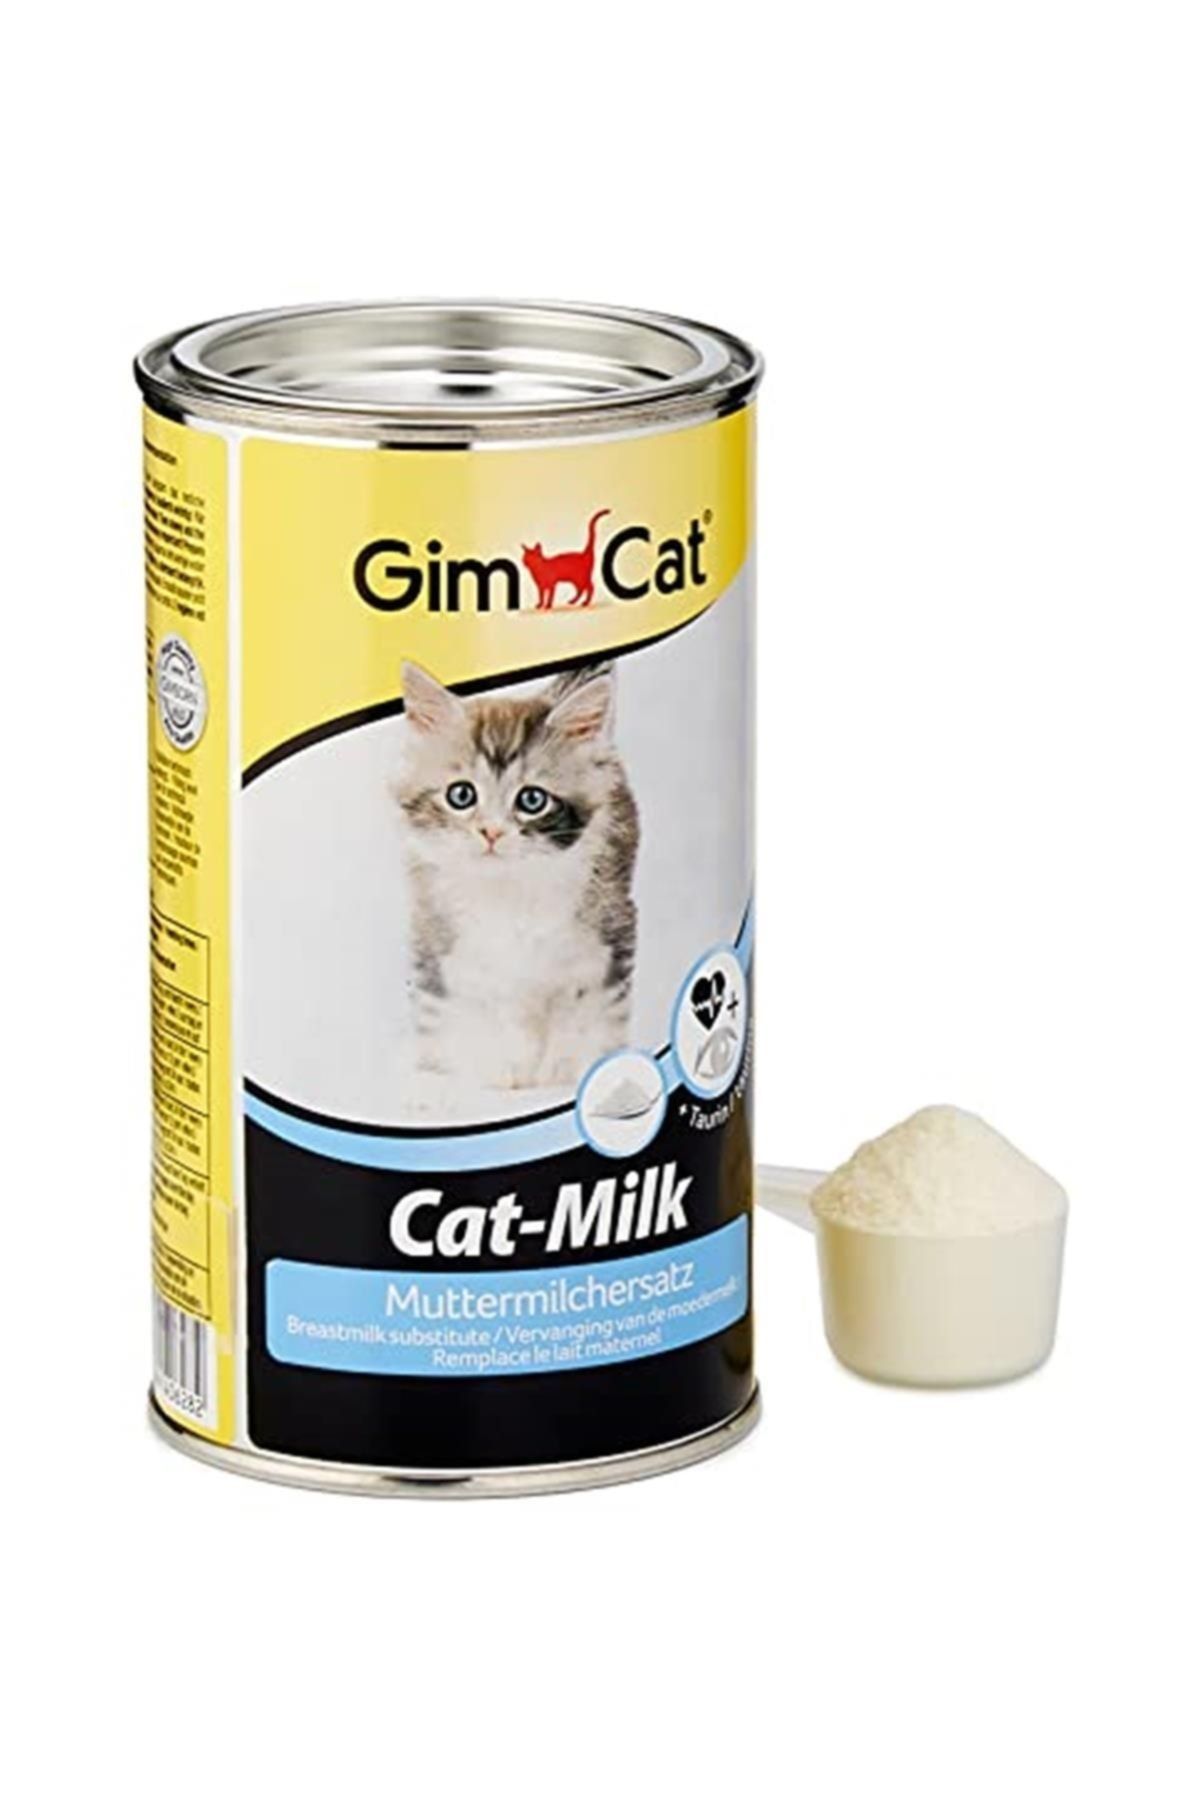 Gimcat Marka: Cat Milk Taurinli Yavru Süt Tozu 200 Gr Kategori: Kedi Oyuncağı